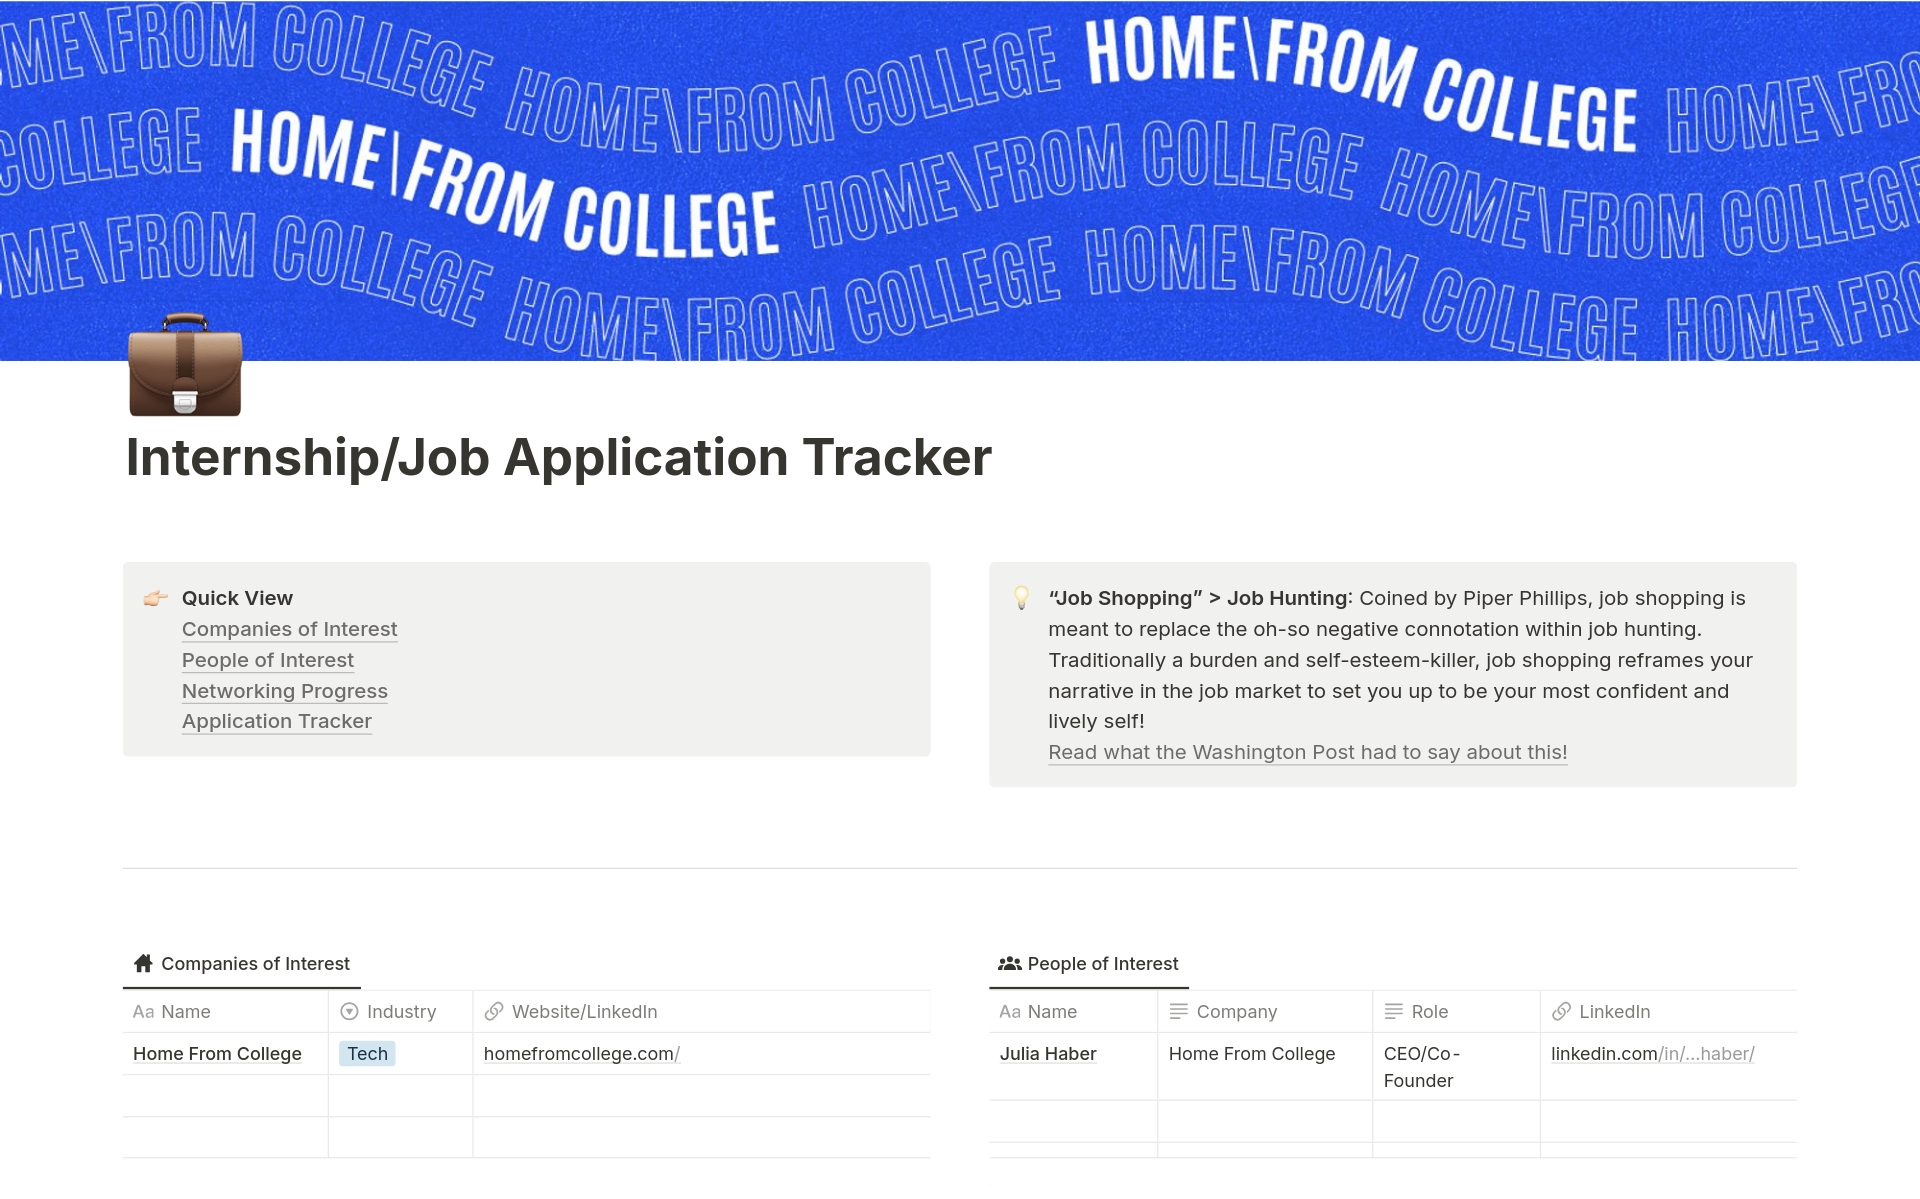 Uma prévia do modelo para Internship/Job Application Tracker